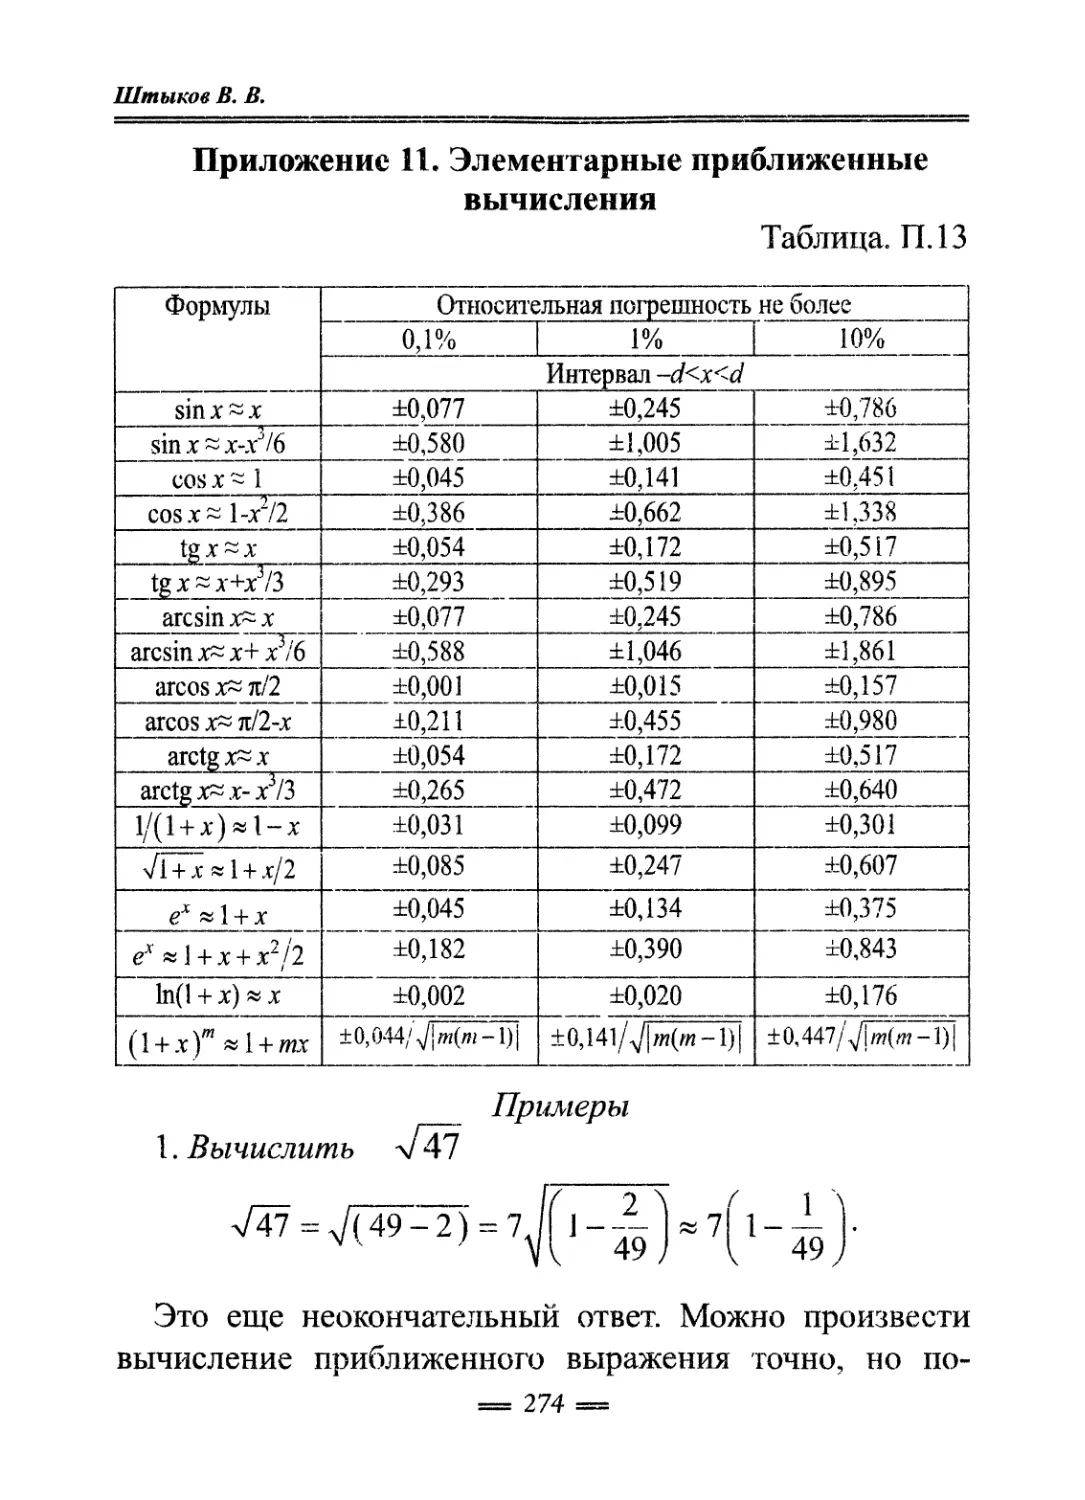 Приложение 11. Элементарные приближенные вычисления